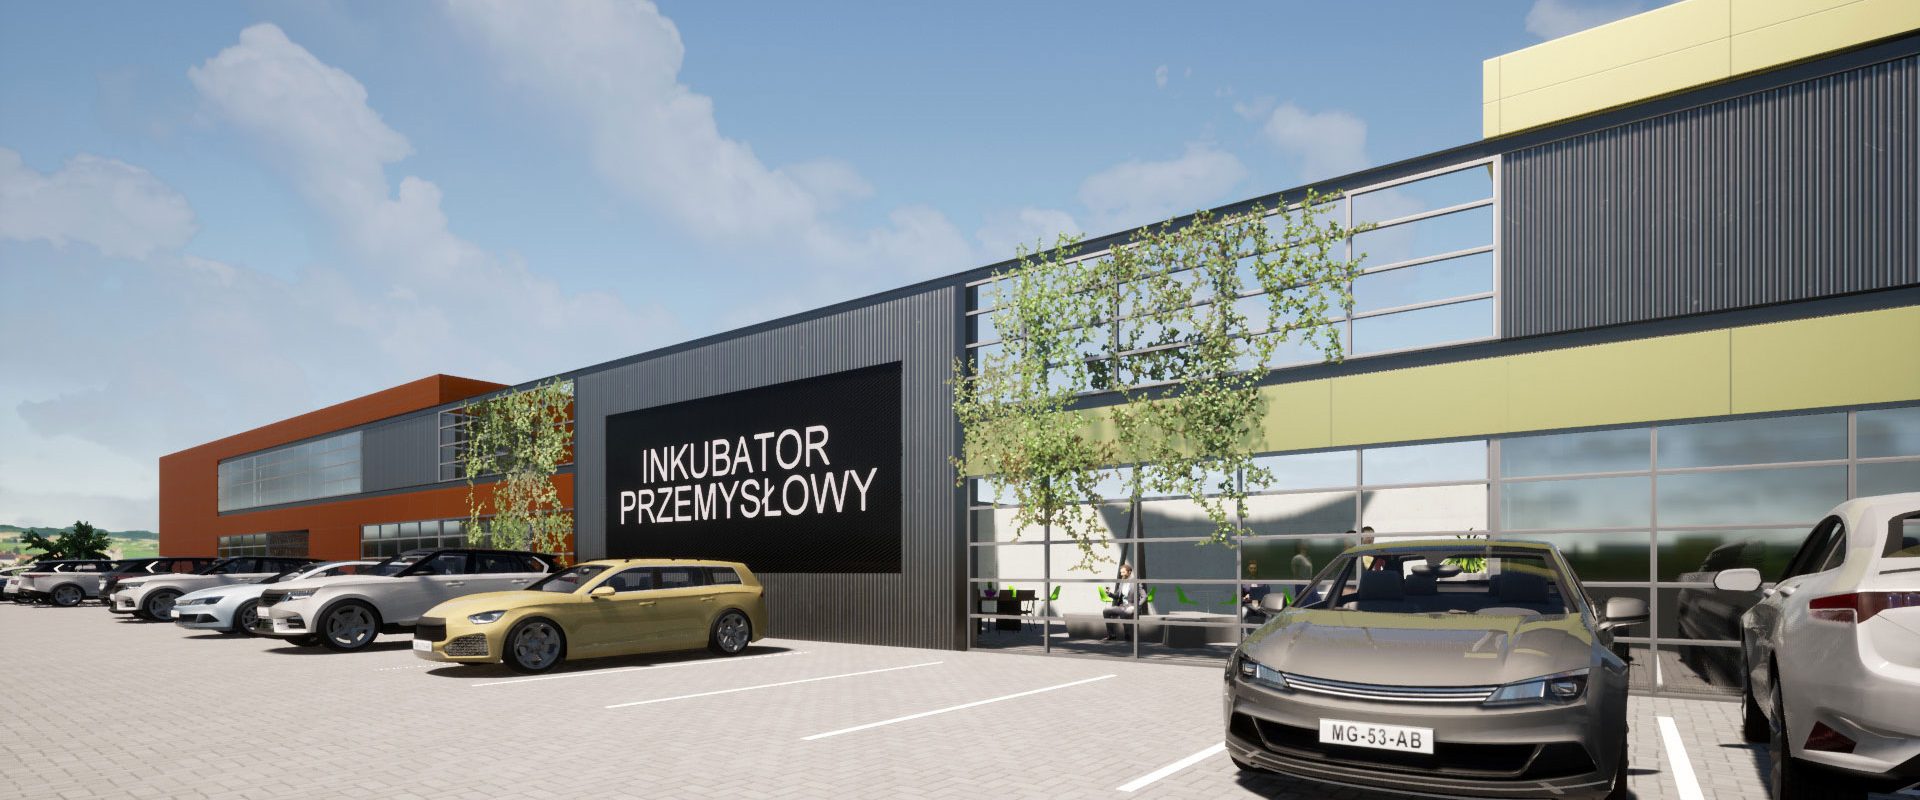 Inkubator Przemysłowy - wraz z powierzchnią produkcyjną przedsiębiorca wynajmuje powierzchnię biurowo-socjalną